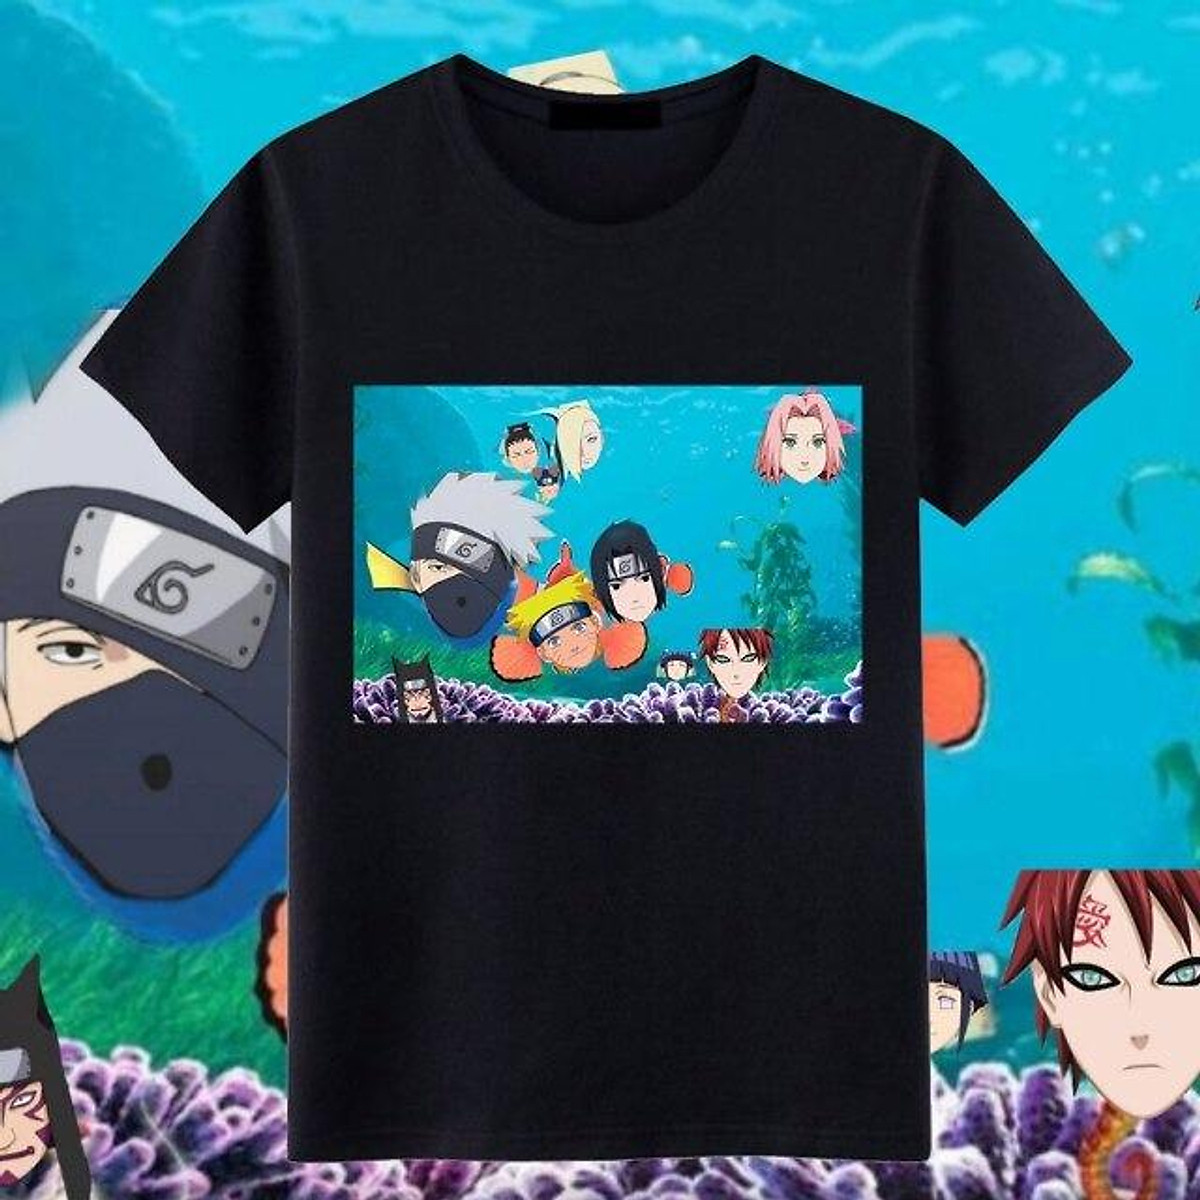 Áo thun Anime Naruto Sasuke là phụ kiện không thể thiếu cho các fan hâm mộ của bộ truyện. Với thiết kế tuyệt đẹp, chất liệu tốt và giá cả phải chăng, bạn sẽ không muốn bỏ qua cơ hội sở hữu một chiếc áo thun chất lượng này. Hãy xem chi tiết bức ảnh liên quan để chọn lựa cho mình nhé!